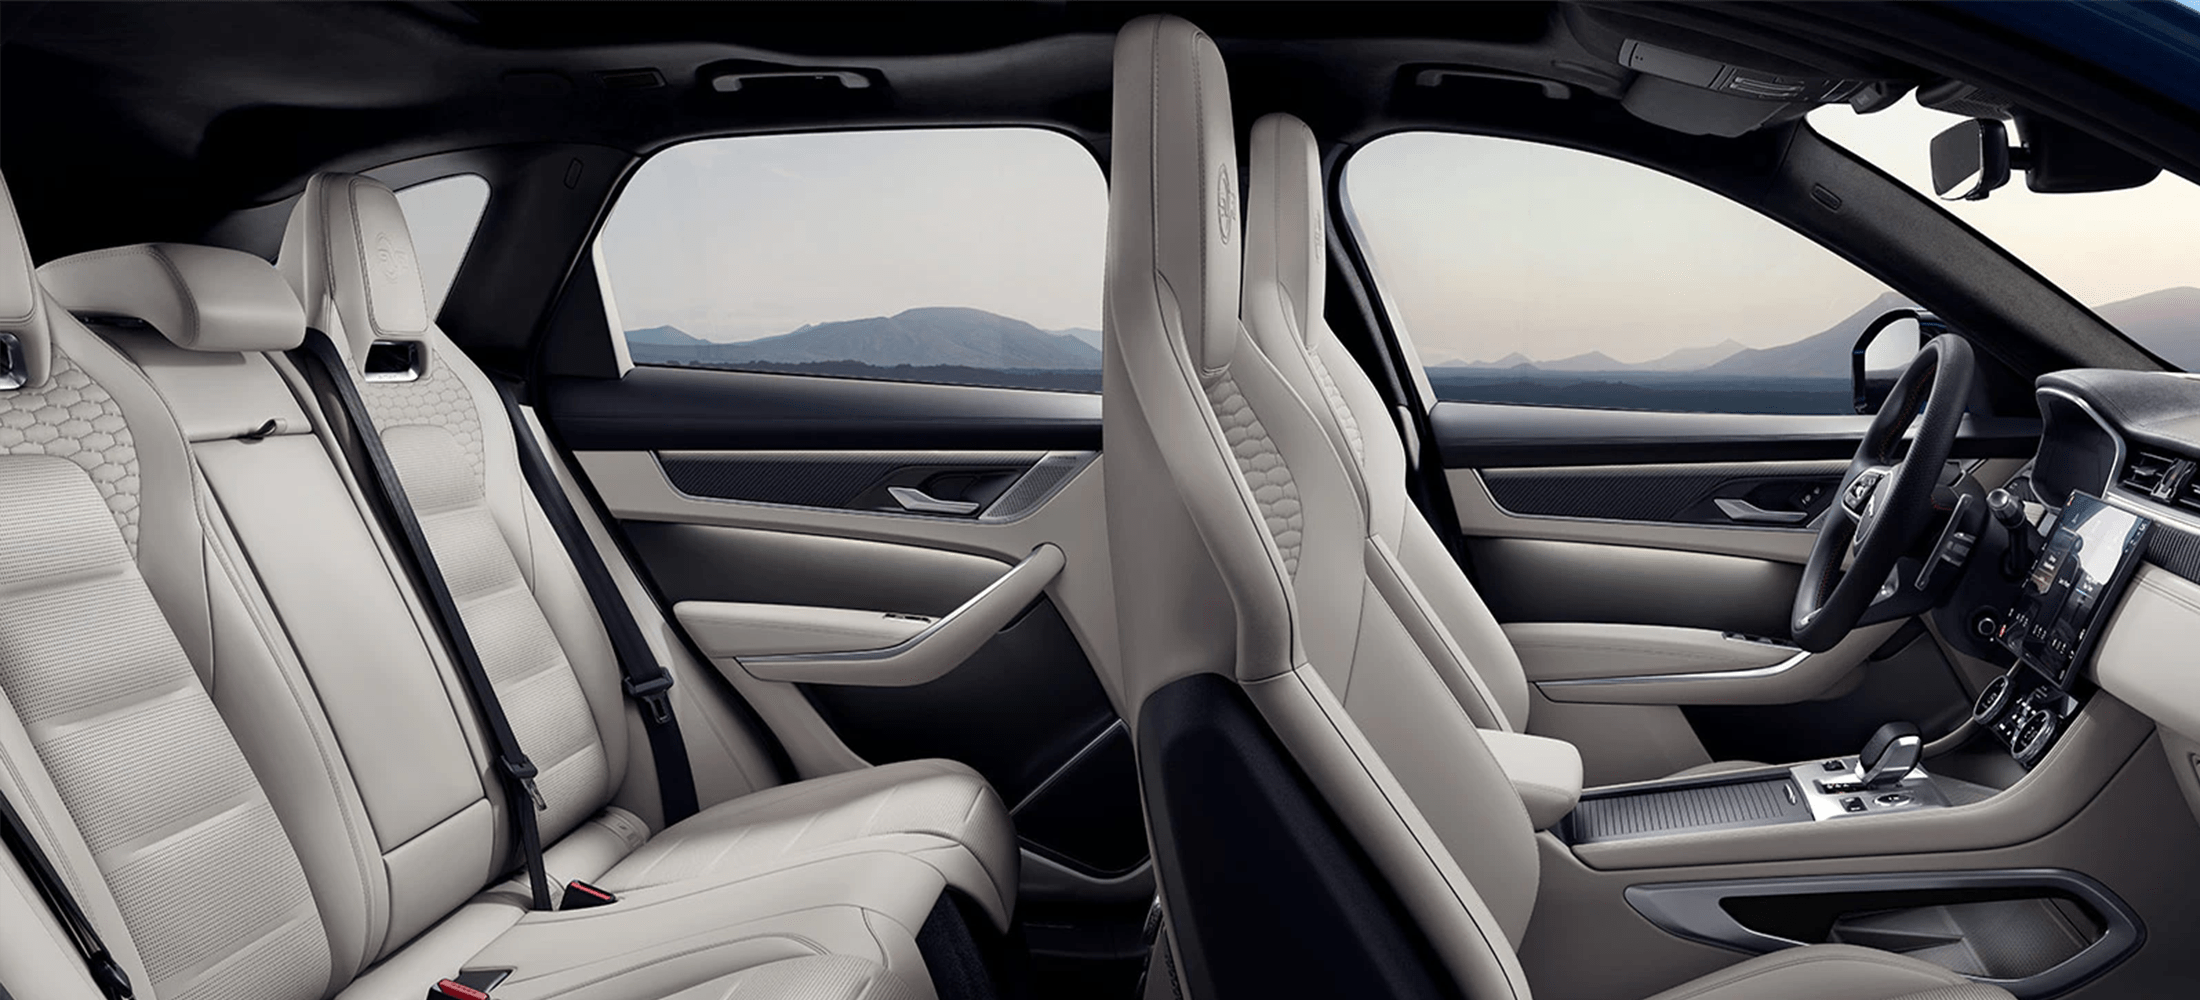 Jaguar F-Pace Ausstattung - Sicherheit